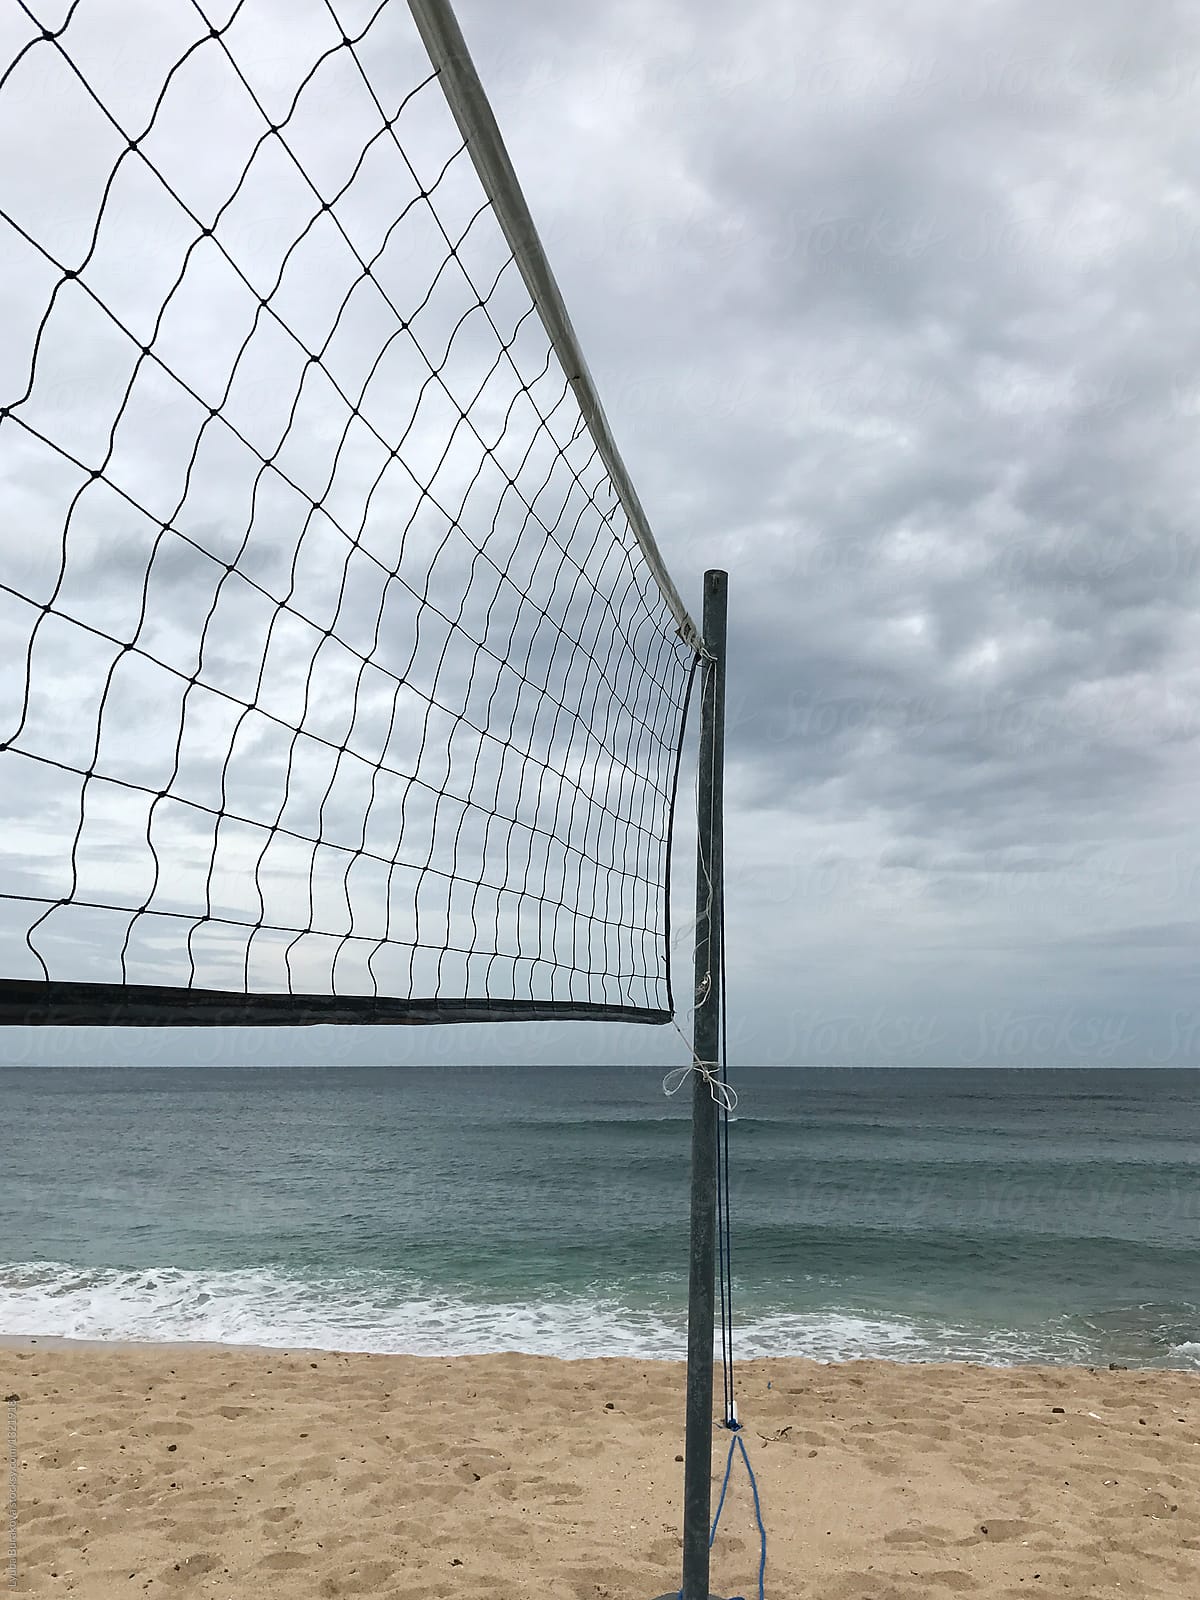 Beach volleyball net. Close up.